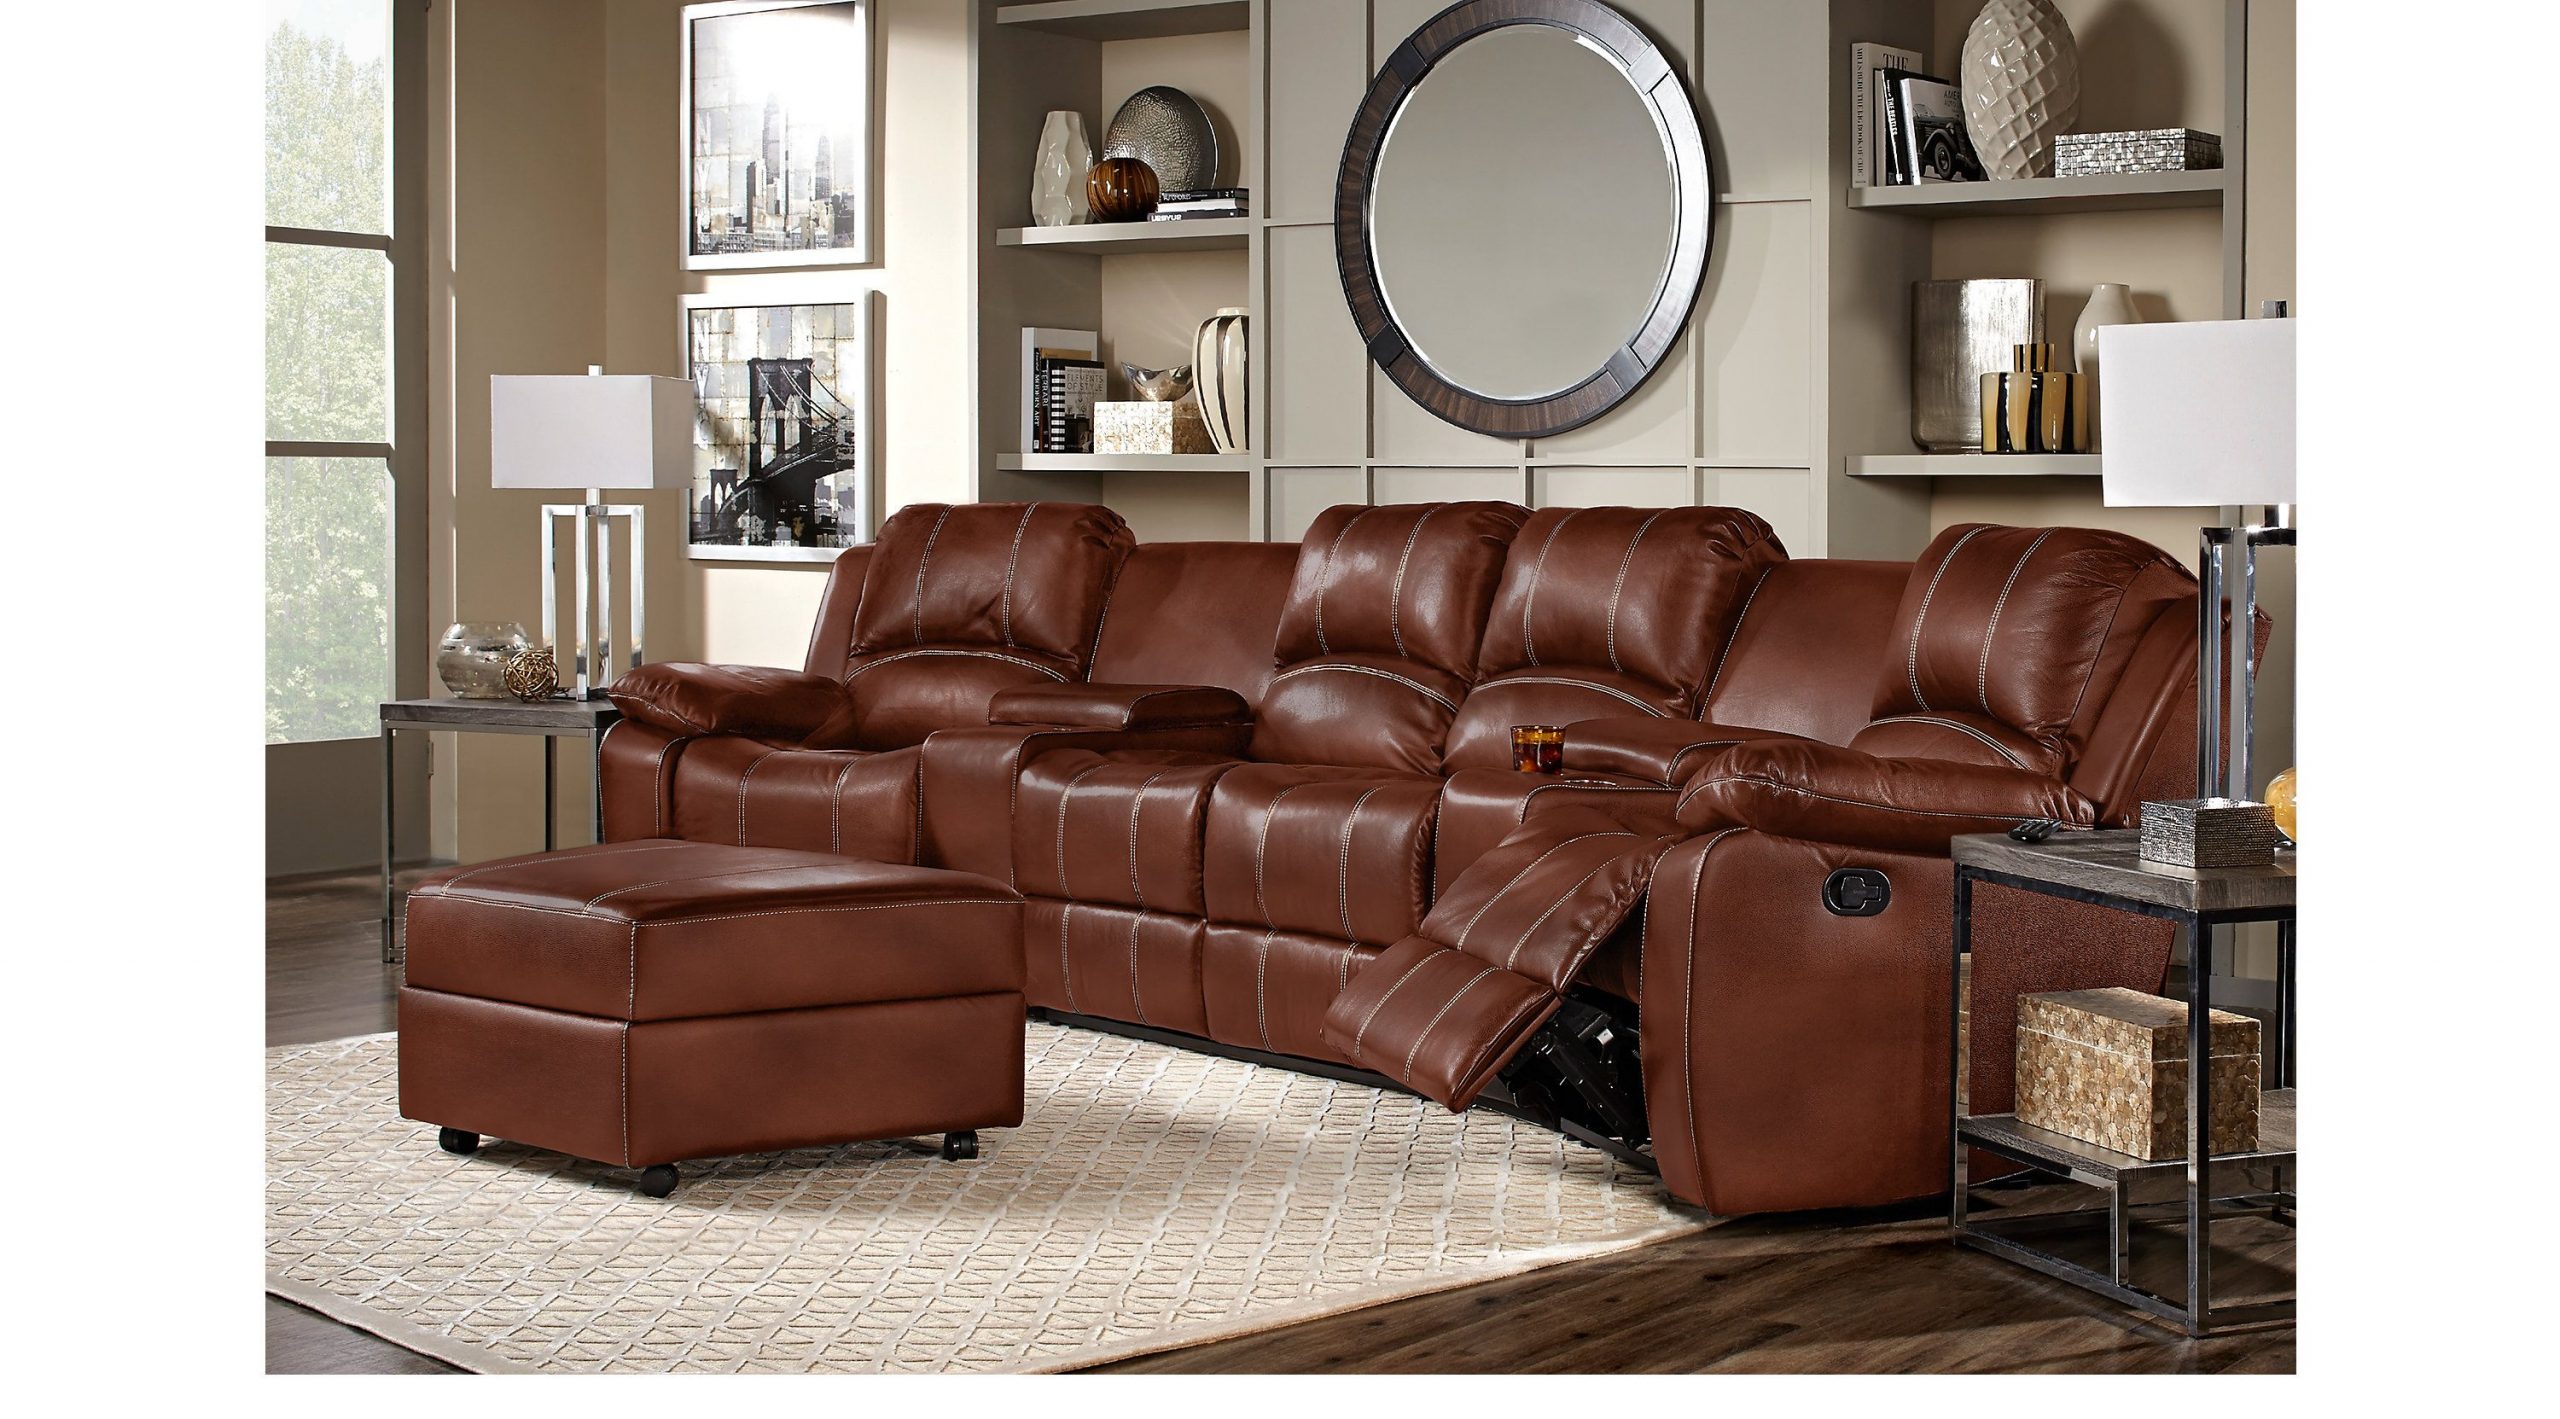 bjs leather living room sets